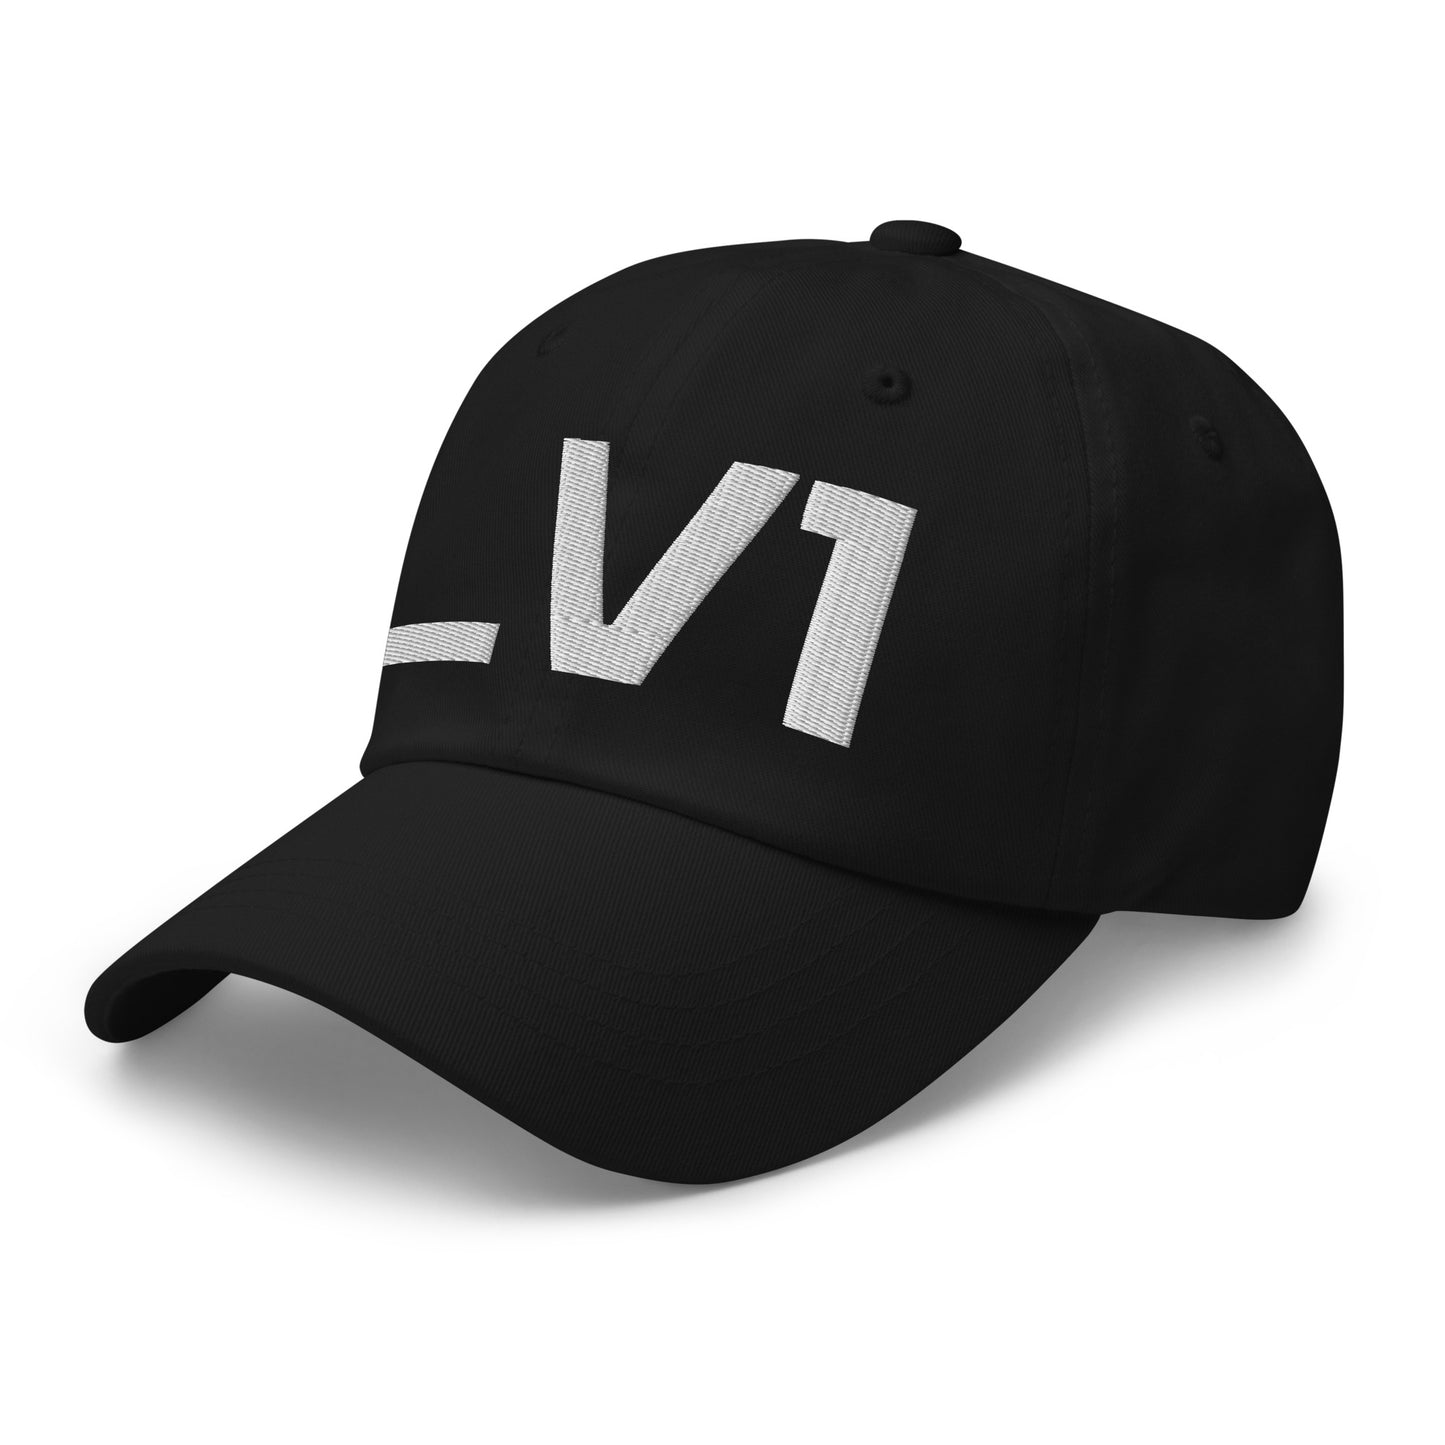 _V1 Embroidered Dad hat